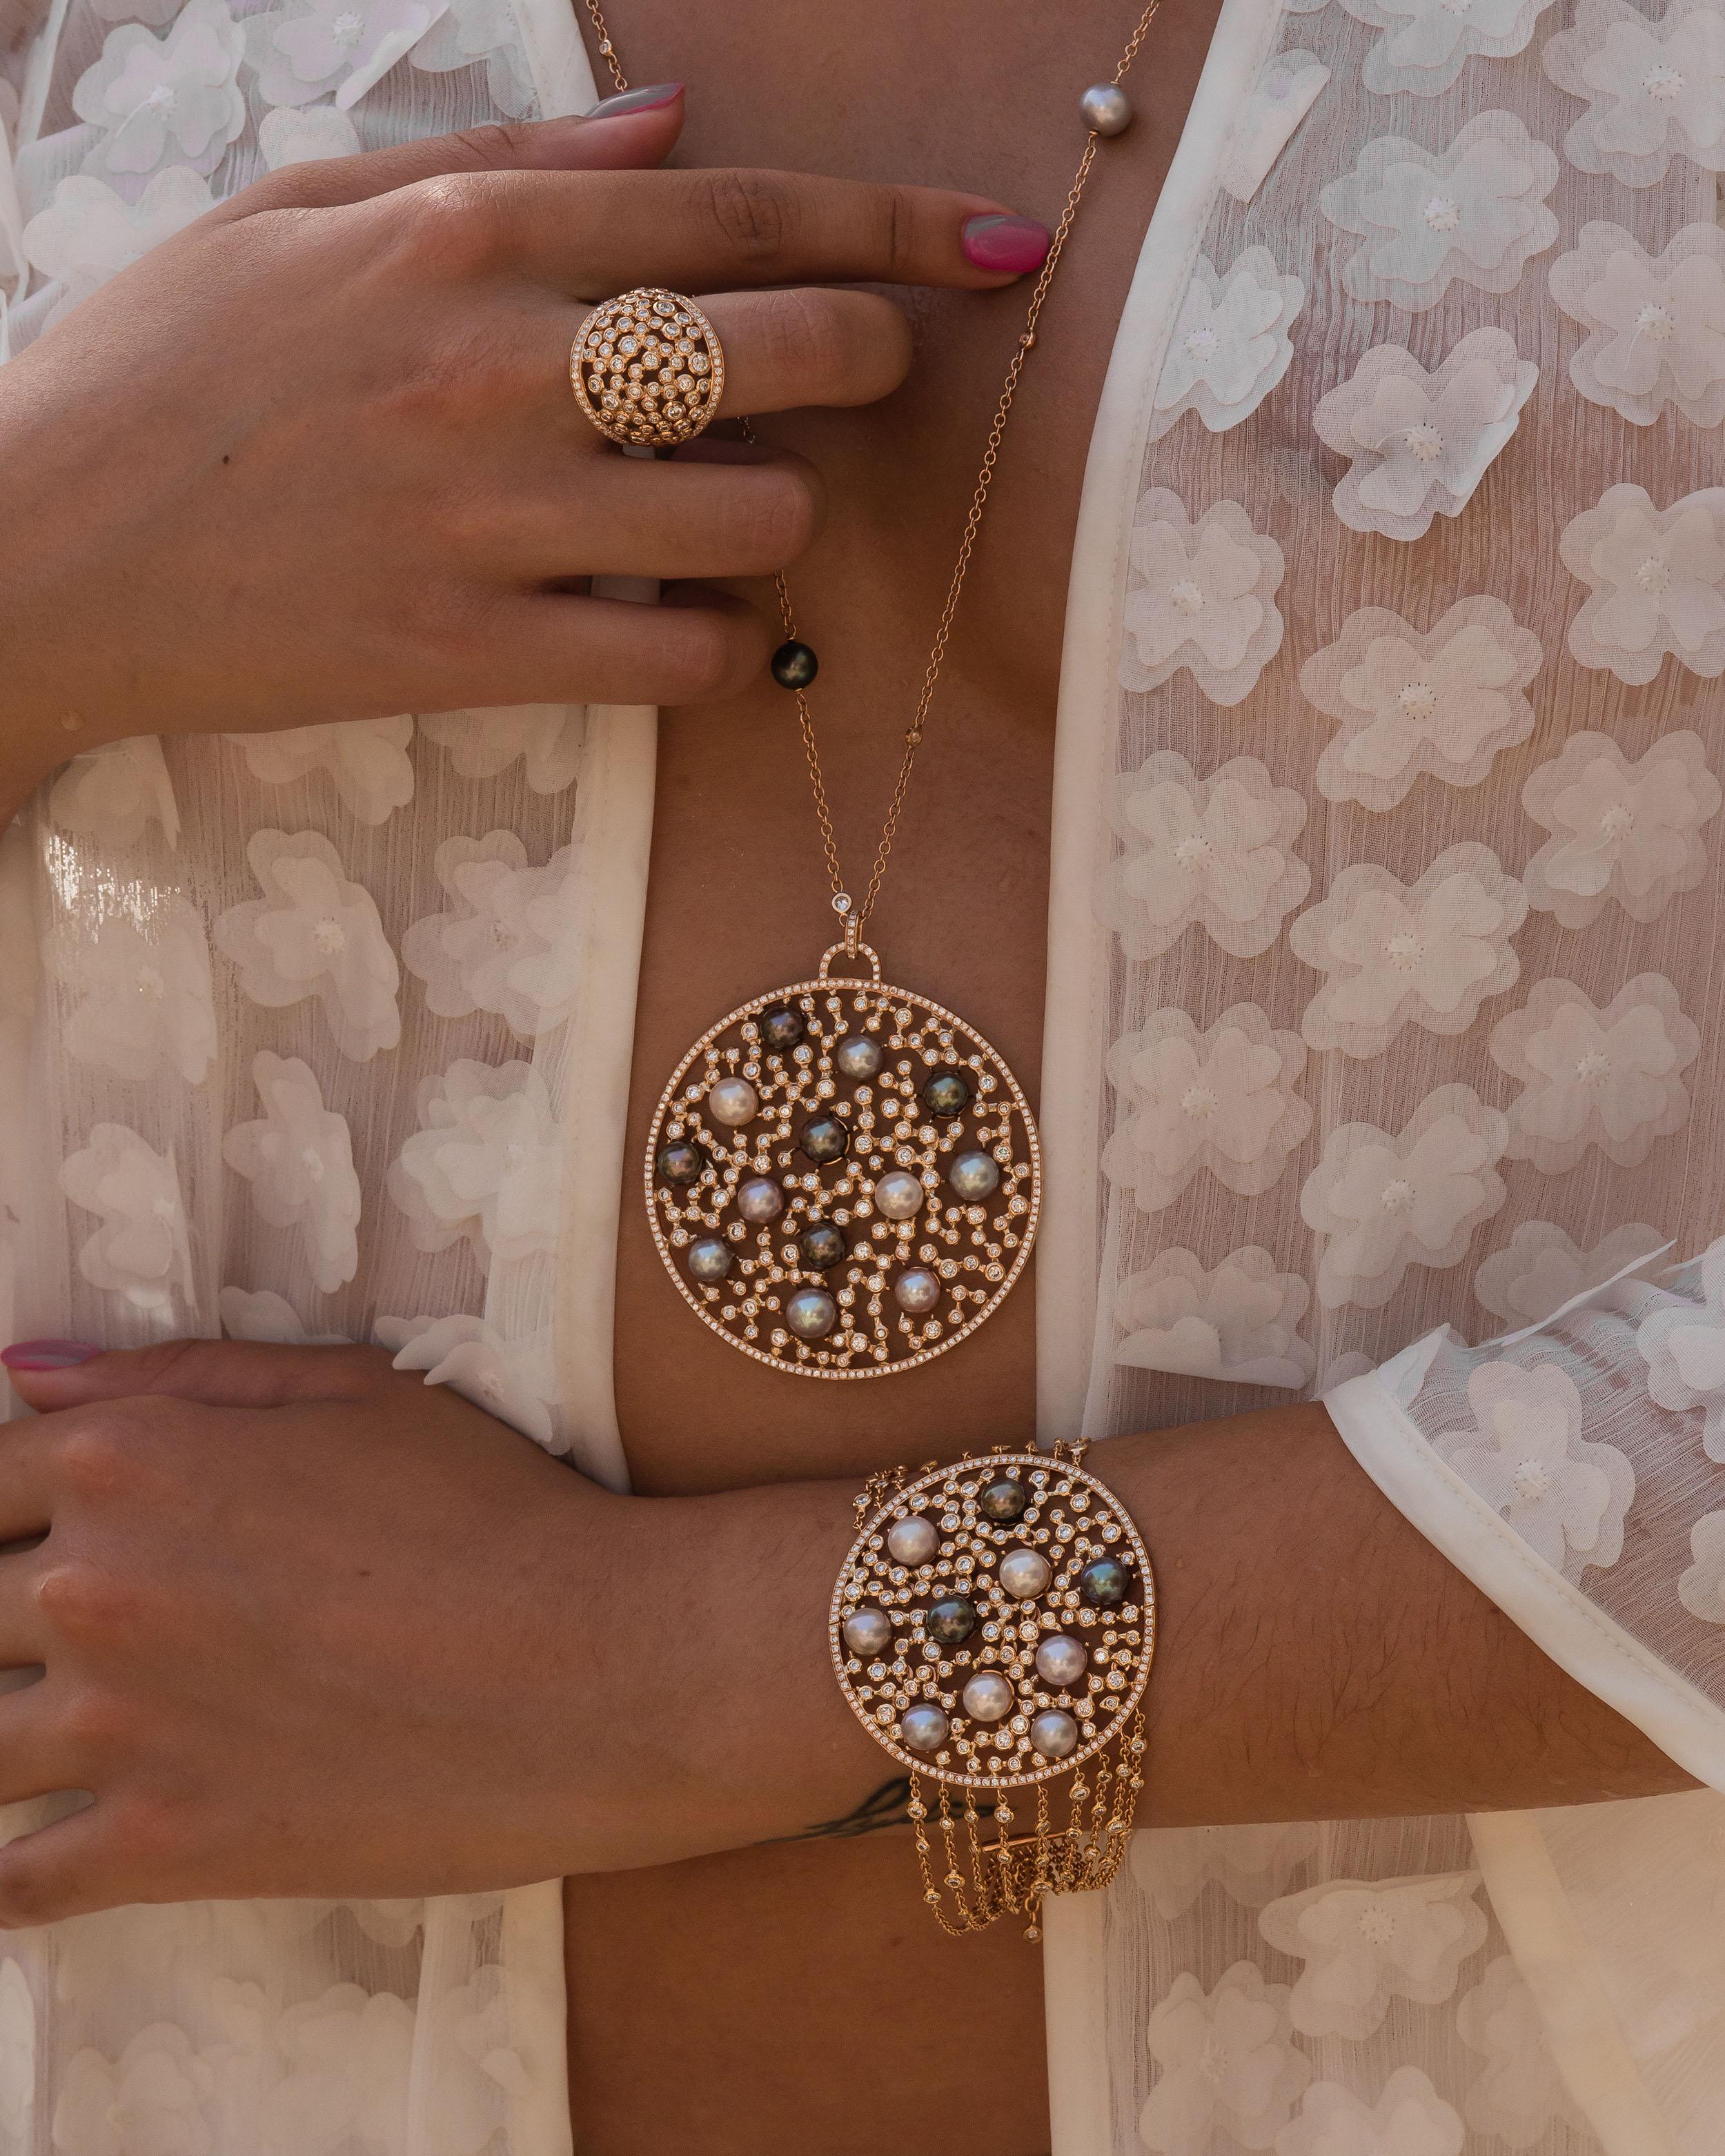 le pendentif en or rose 18K est issu de notre collection Sirène. Ce pendentif absolument magnifique est créé à partir de diamants blancs naturels d'une valeur totale de 5,13 carats et de perles australiennes multicolores d'une valeur totale de 69,85